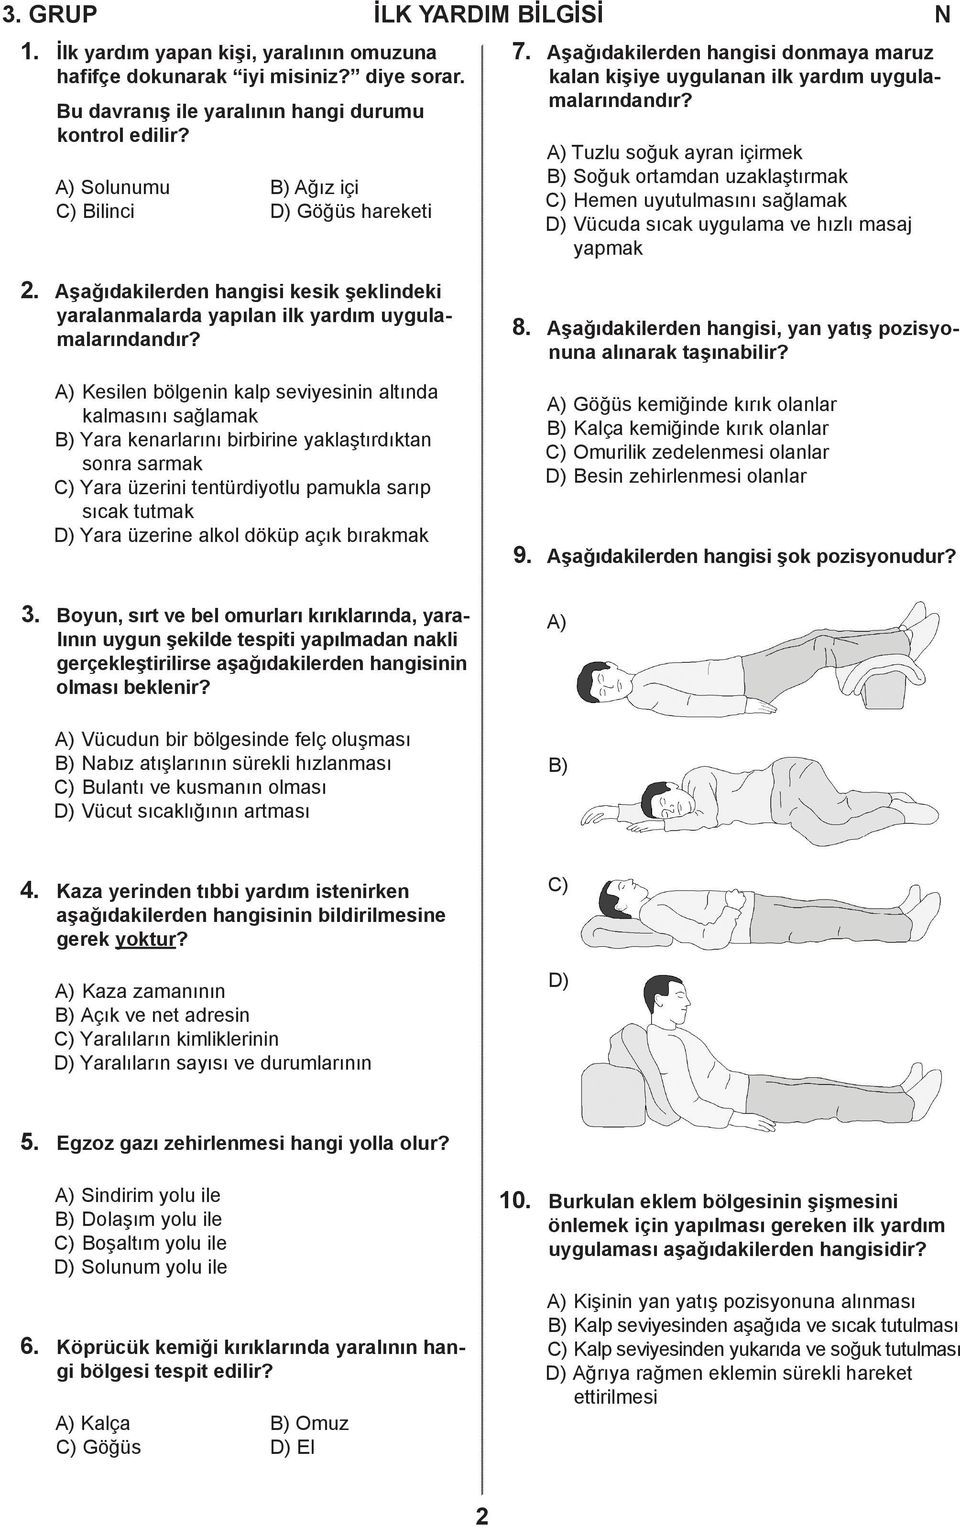 A) Tuzlu soğuk ayran içirmek B) Soğuk ortamdan uzaklaştırmak C) Hemen uyutulmasını sağlamak D) Vücuda sıcak uygulama ve hızlı masaj yapmak 2.